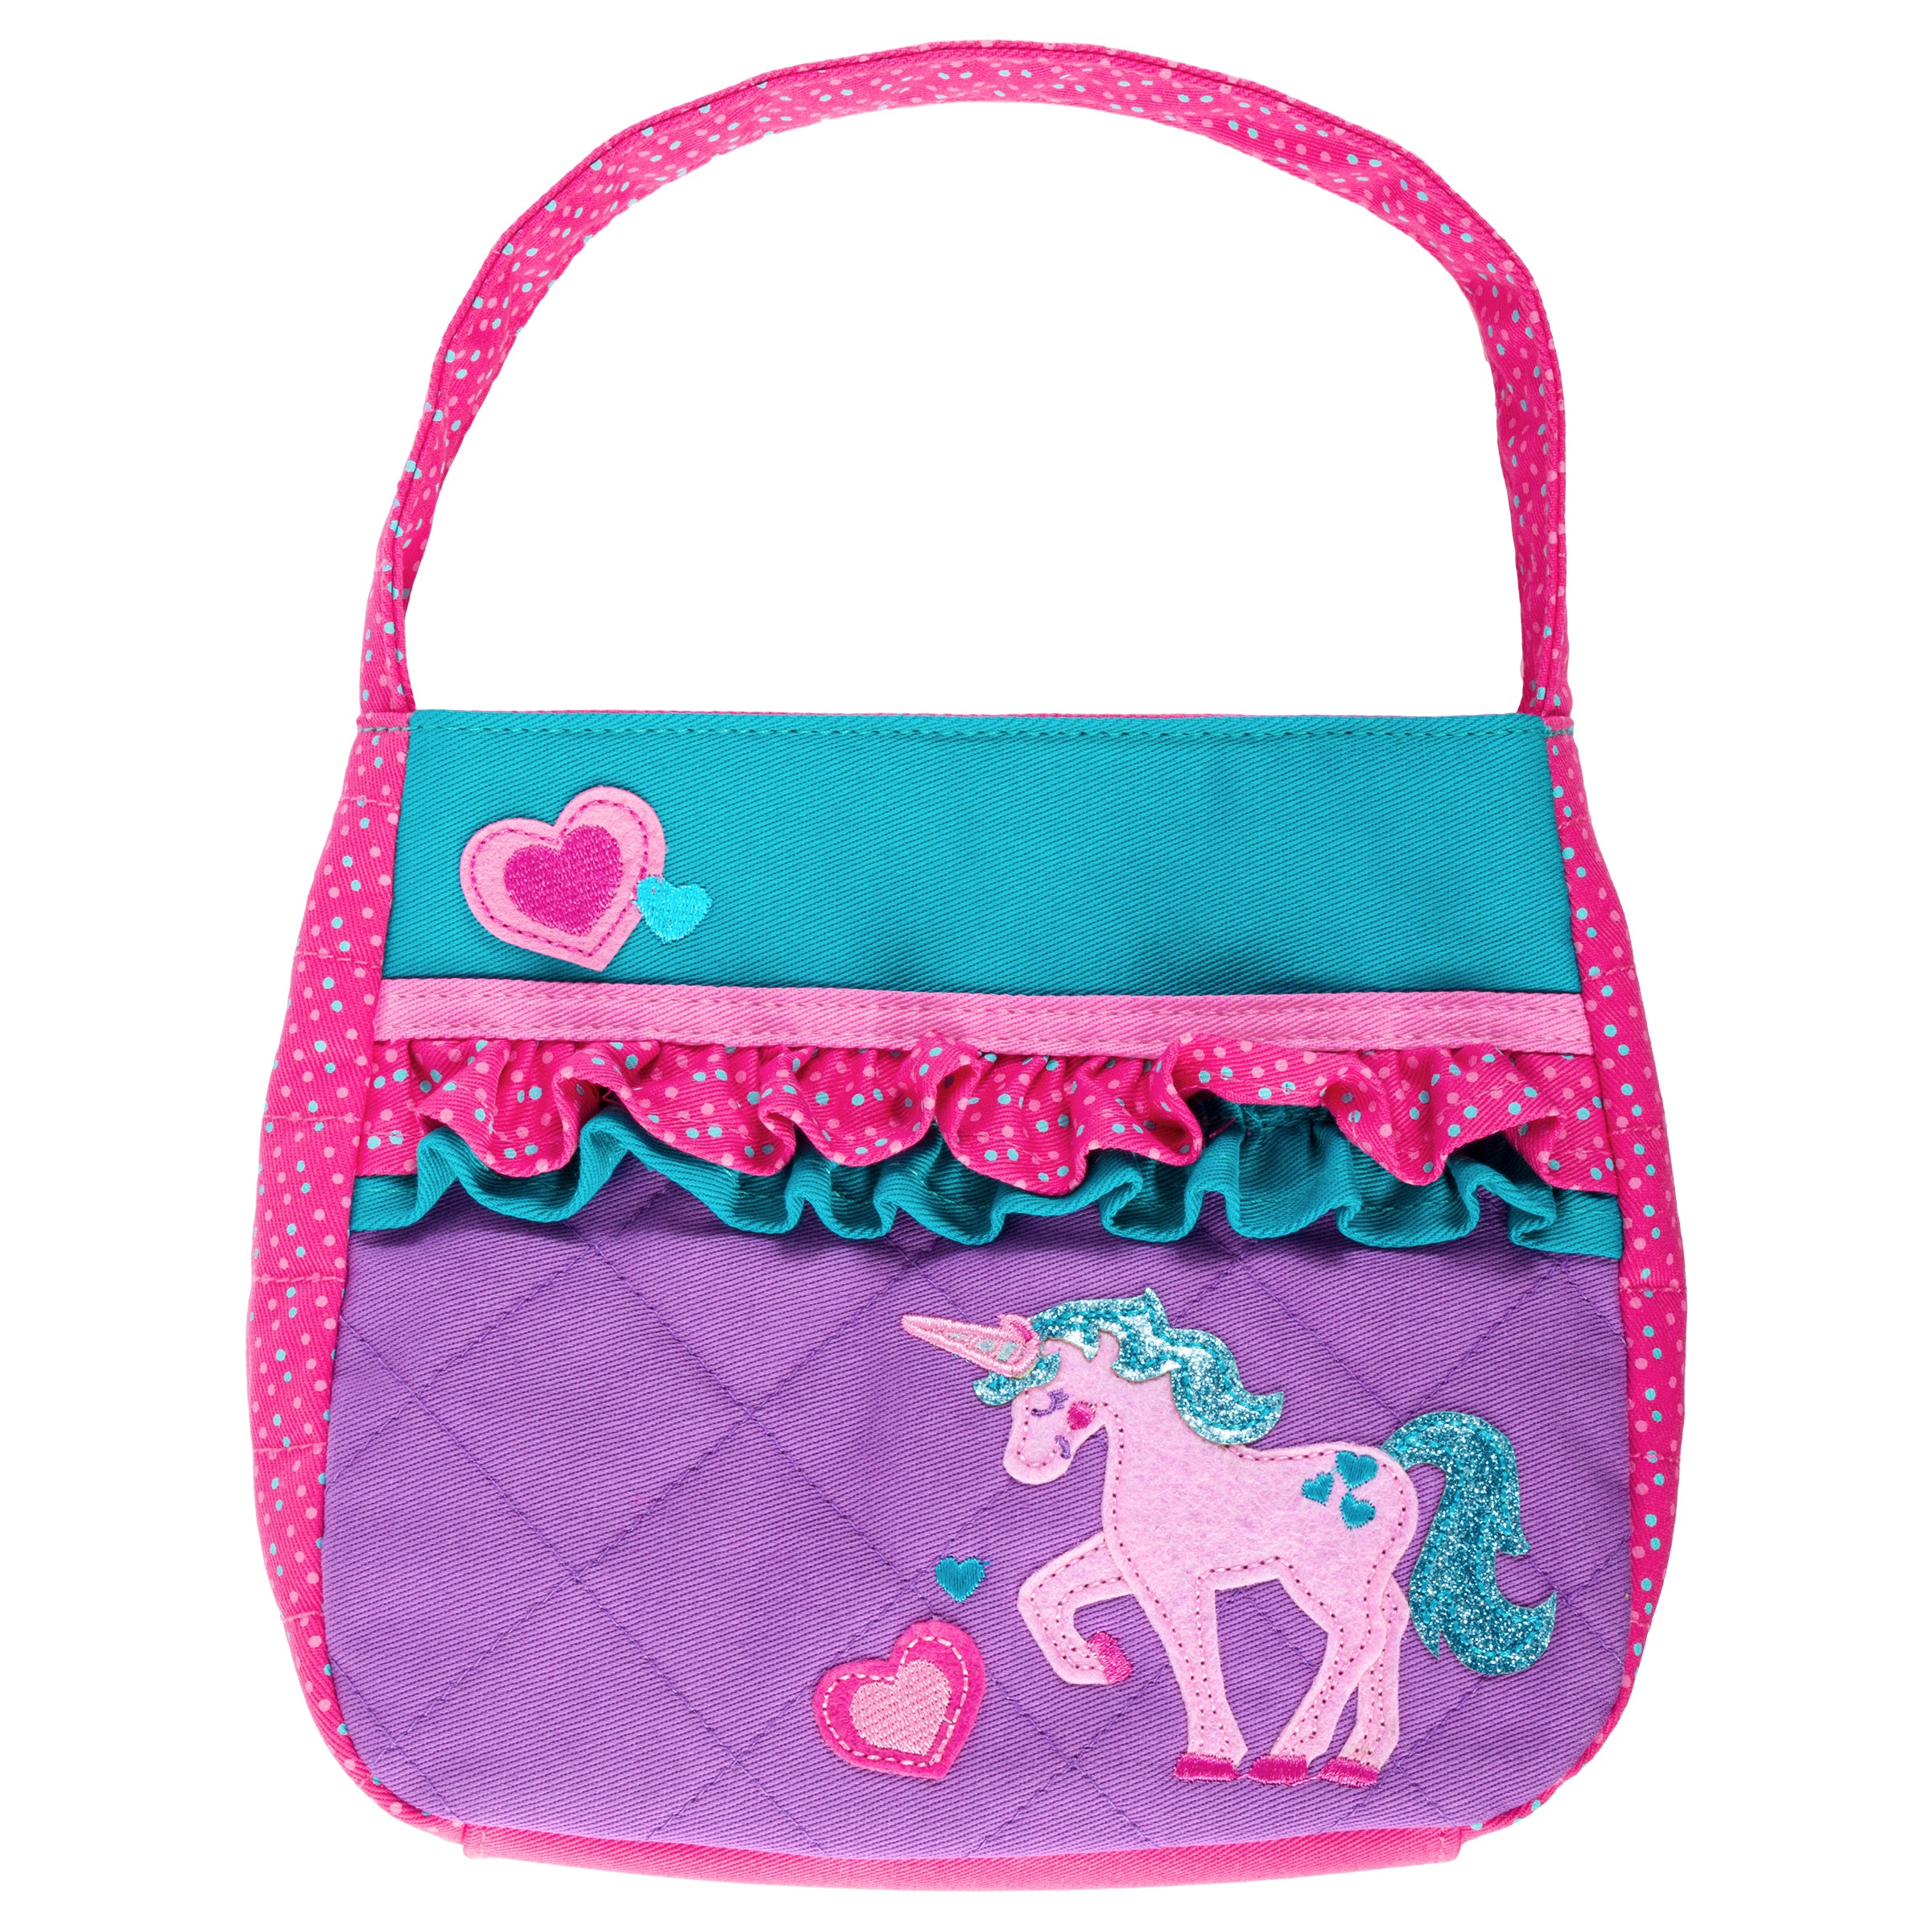 Unicorn Sling Bag For Kids and Girls – Poketz